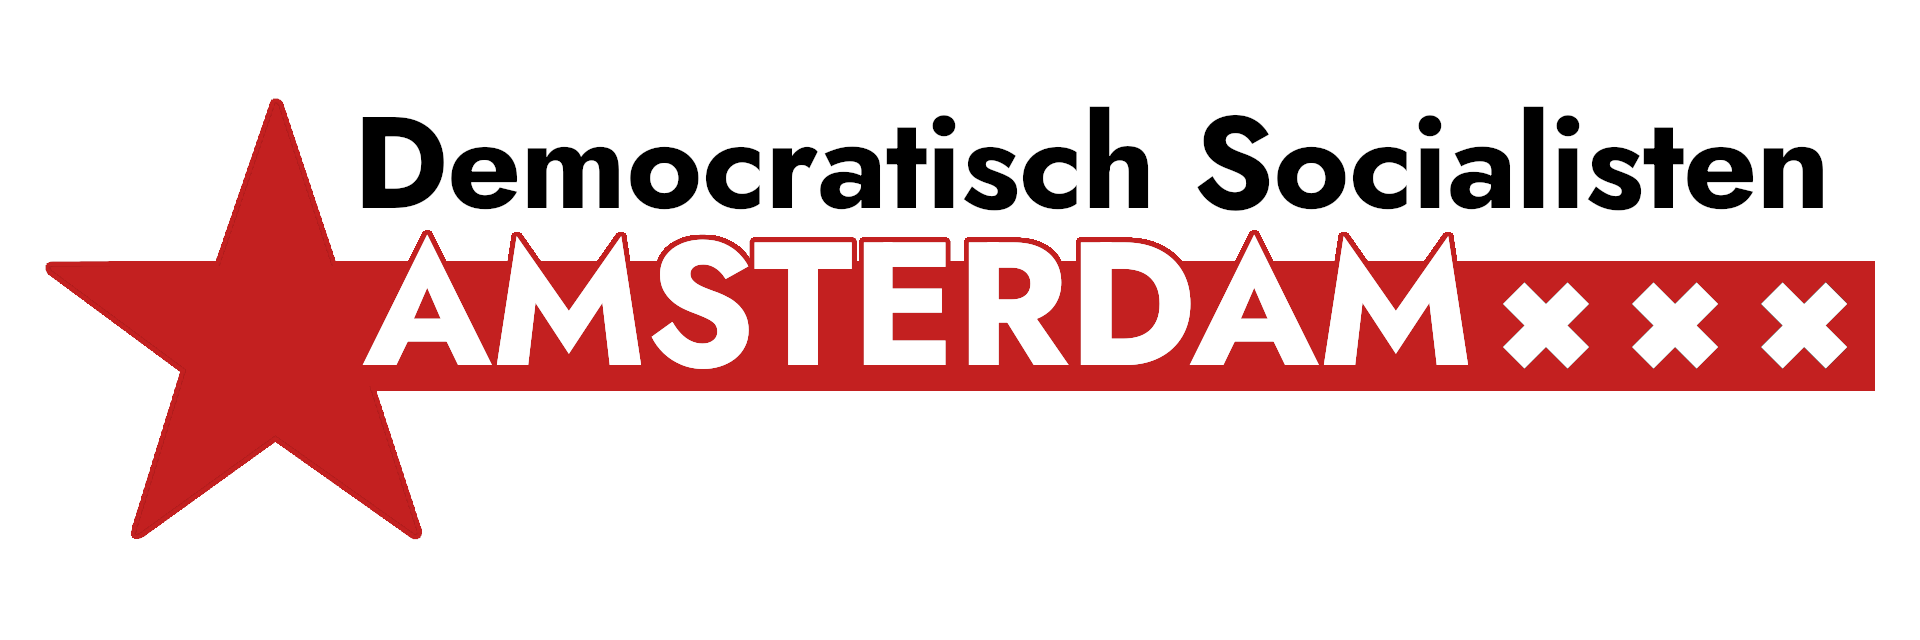 Democratisch Socialisten Amsterdam